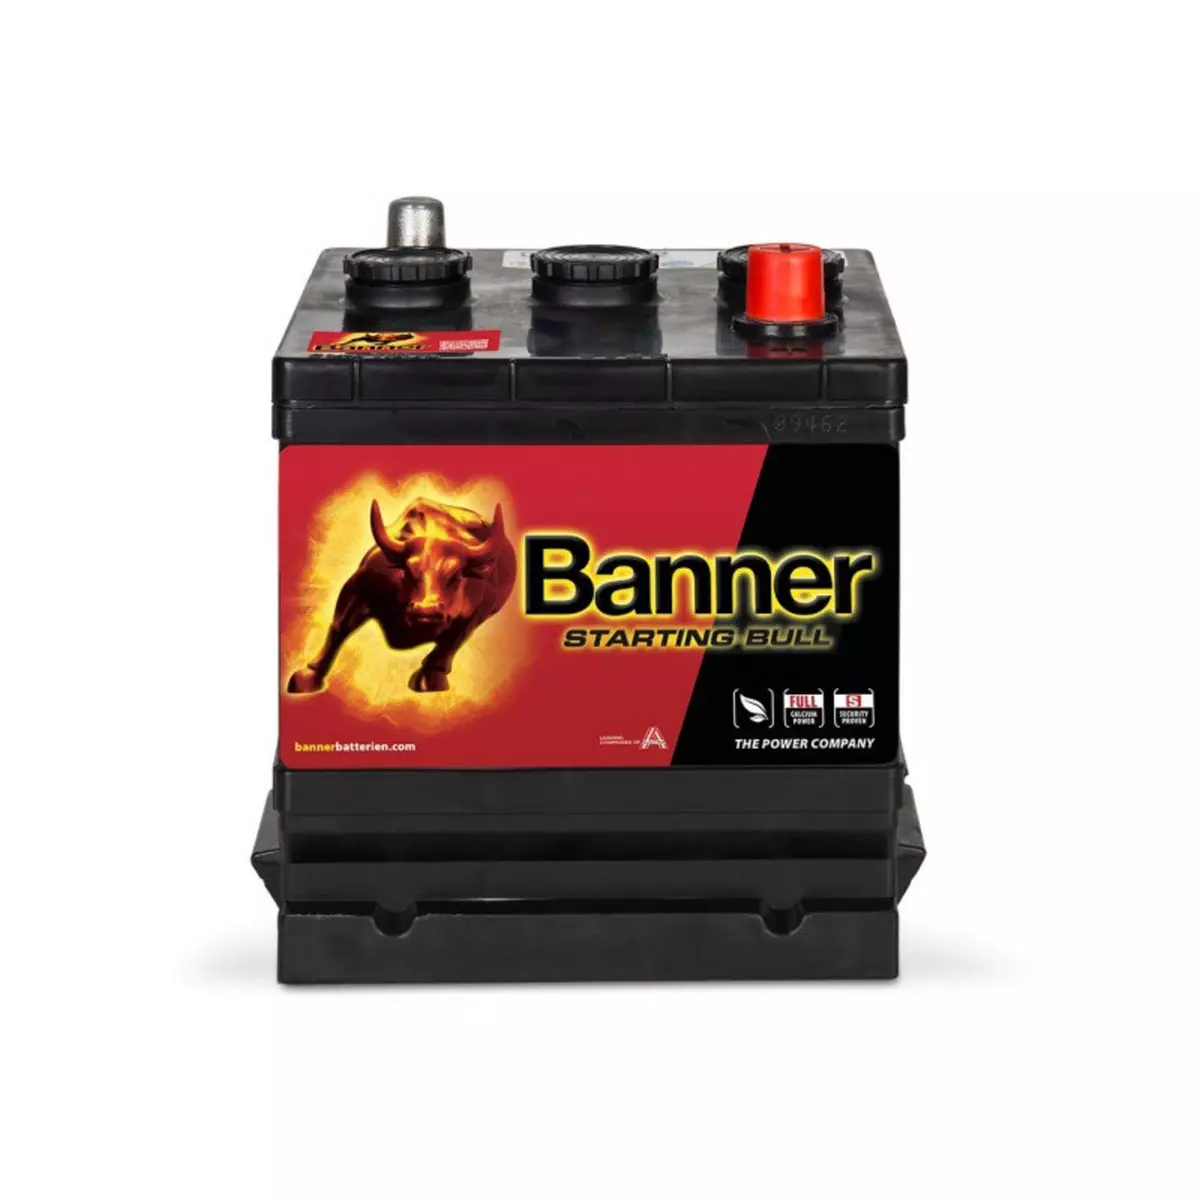 BANNER Batterie Starting Bull Banner 06612 6v 66ah 360A